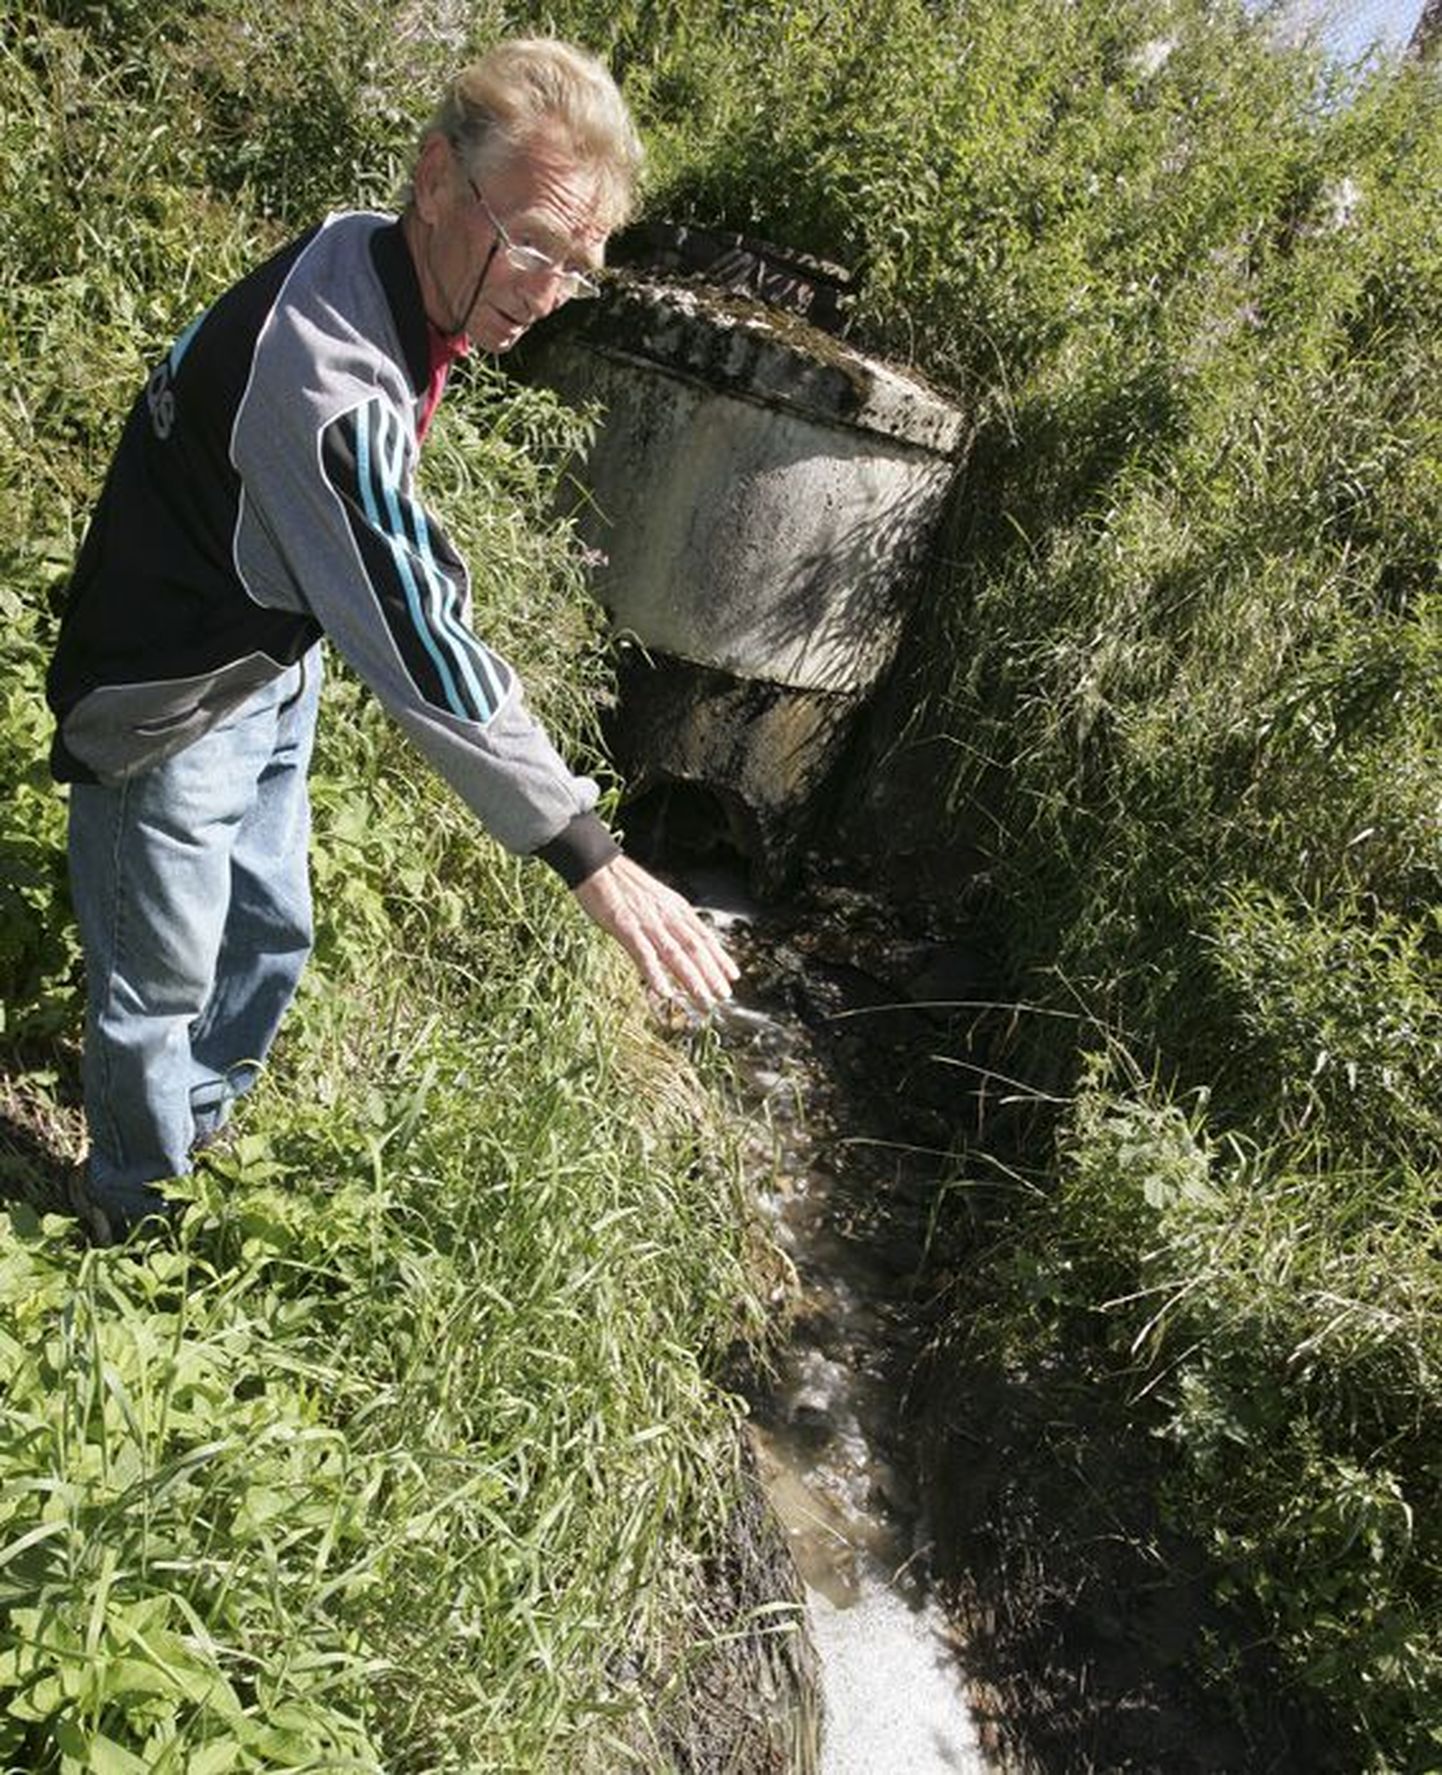 Vao küla elanik Jüri Elmend näitab Väike-Maarja biopuhastist väljuvat vett, mille kobrutav vaht ja hägusus annavad tunnistust, et puhastusseadmed töötavad suvesoojuses ebaefektiivselt.